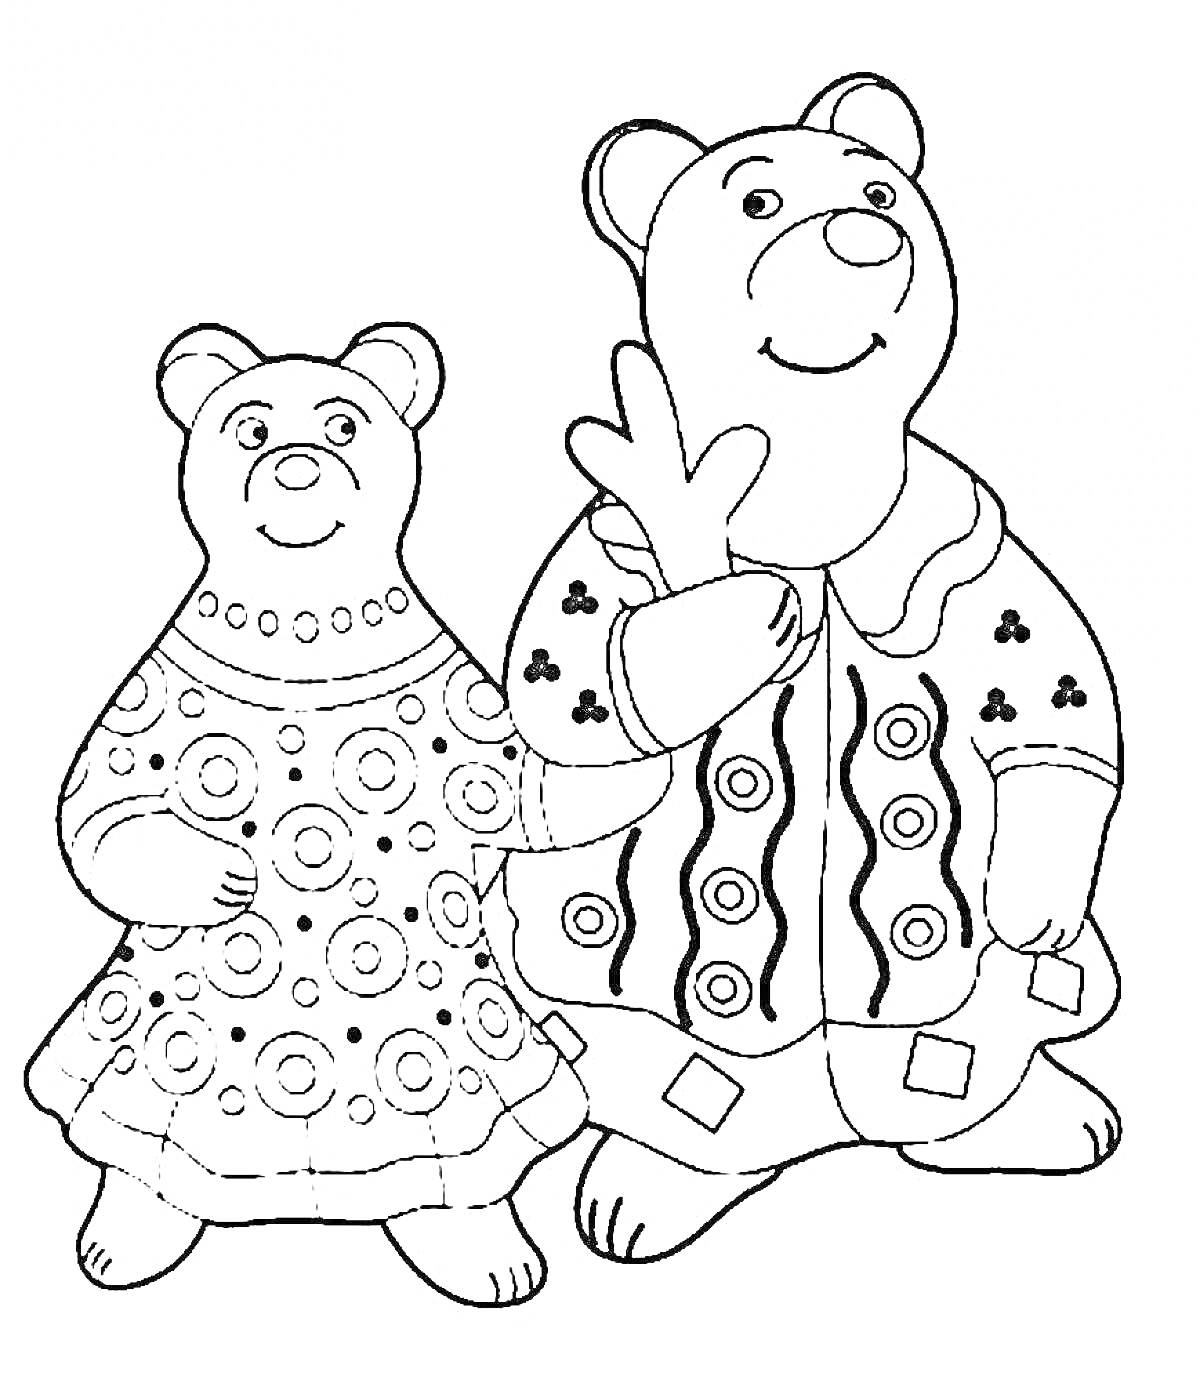 Дымковская игрушка в виде двух медведей, одетых в традиционные наряды с узорами